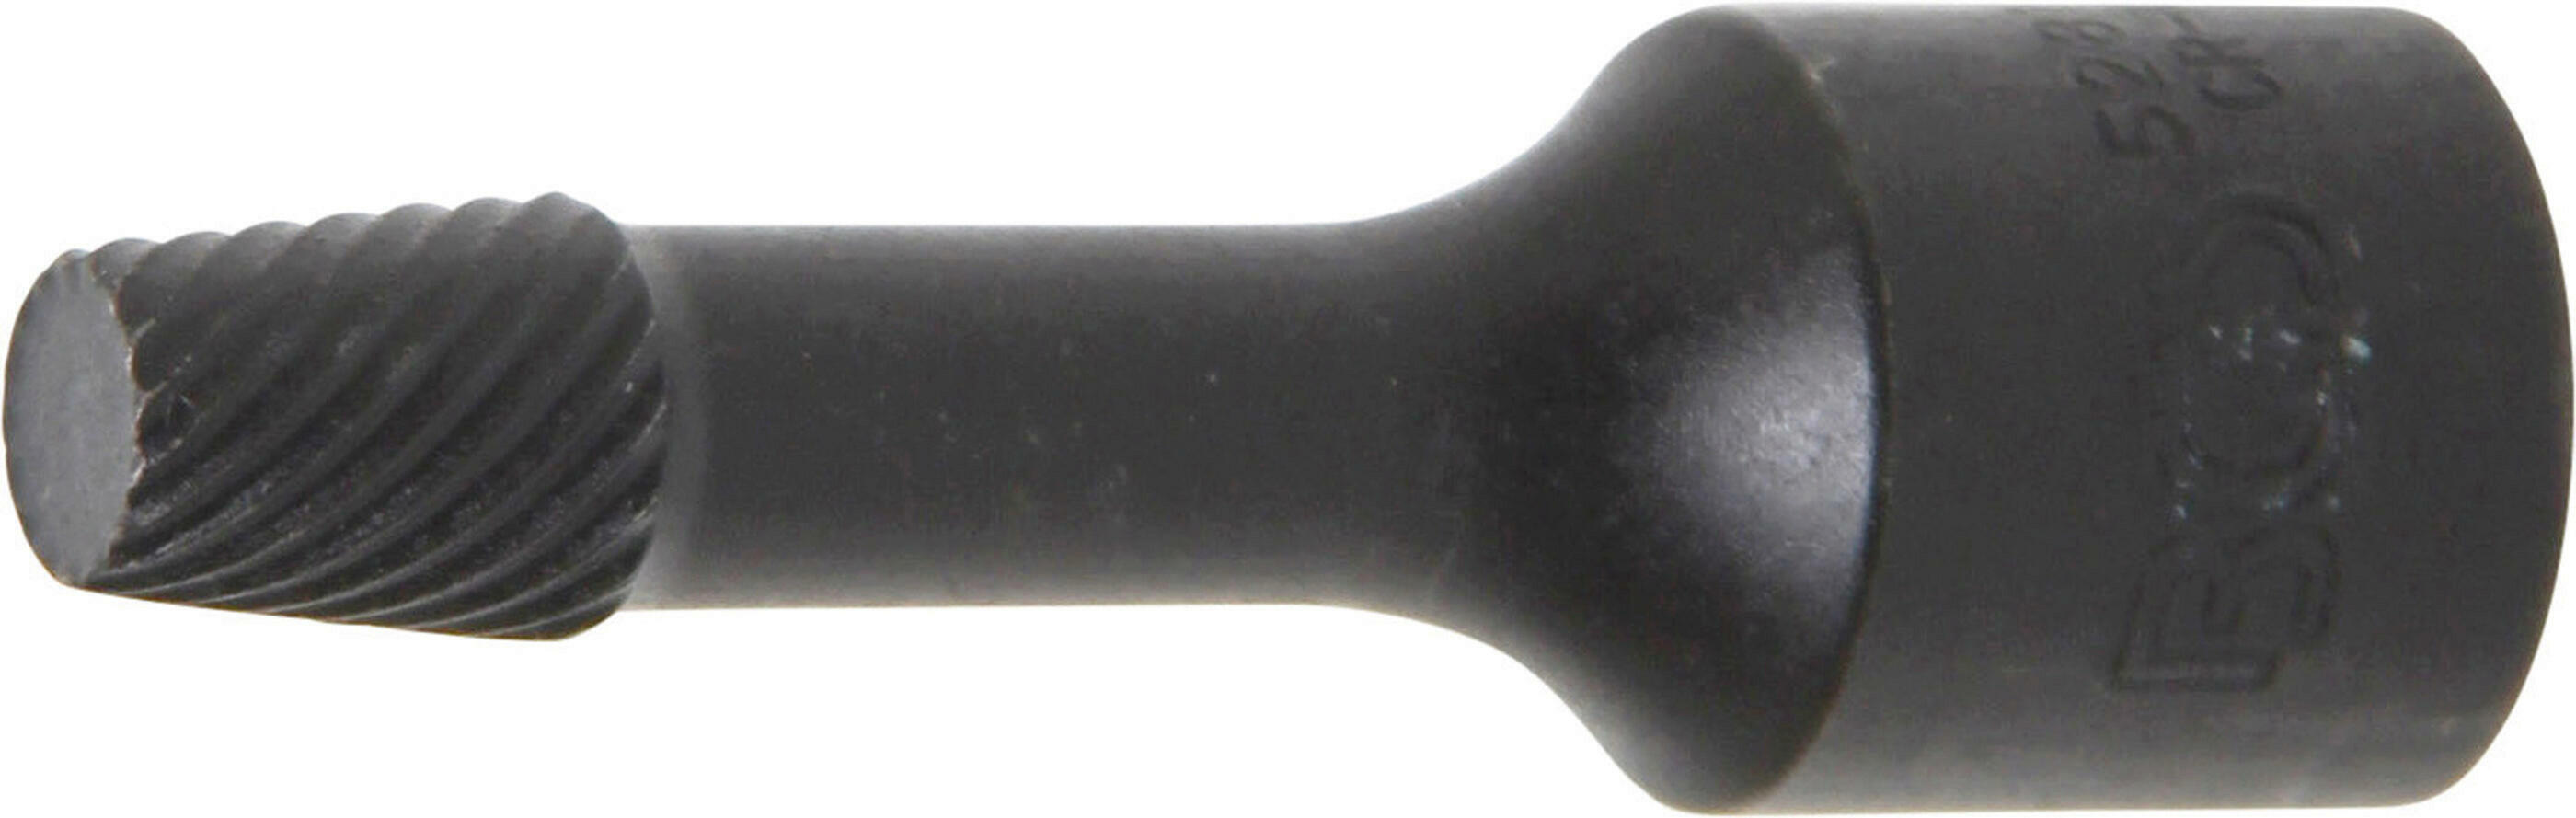 Spiral-Profil-Steckschlüssel-Einsatz / Schraubenausdreher | Antrieb Innenvierkant 10 mm (3/8") | 8 mm